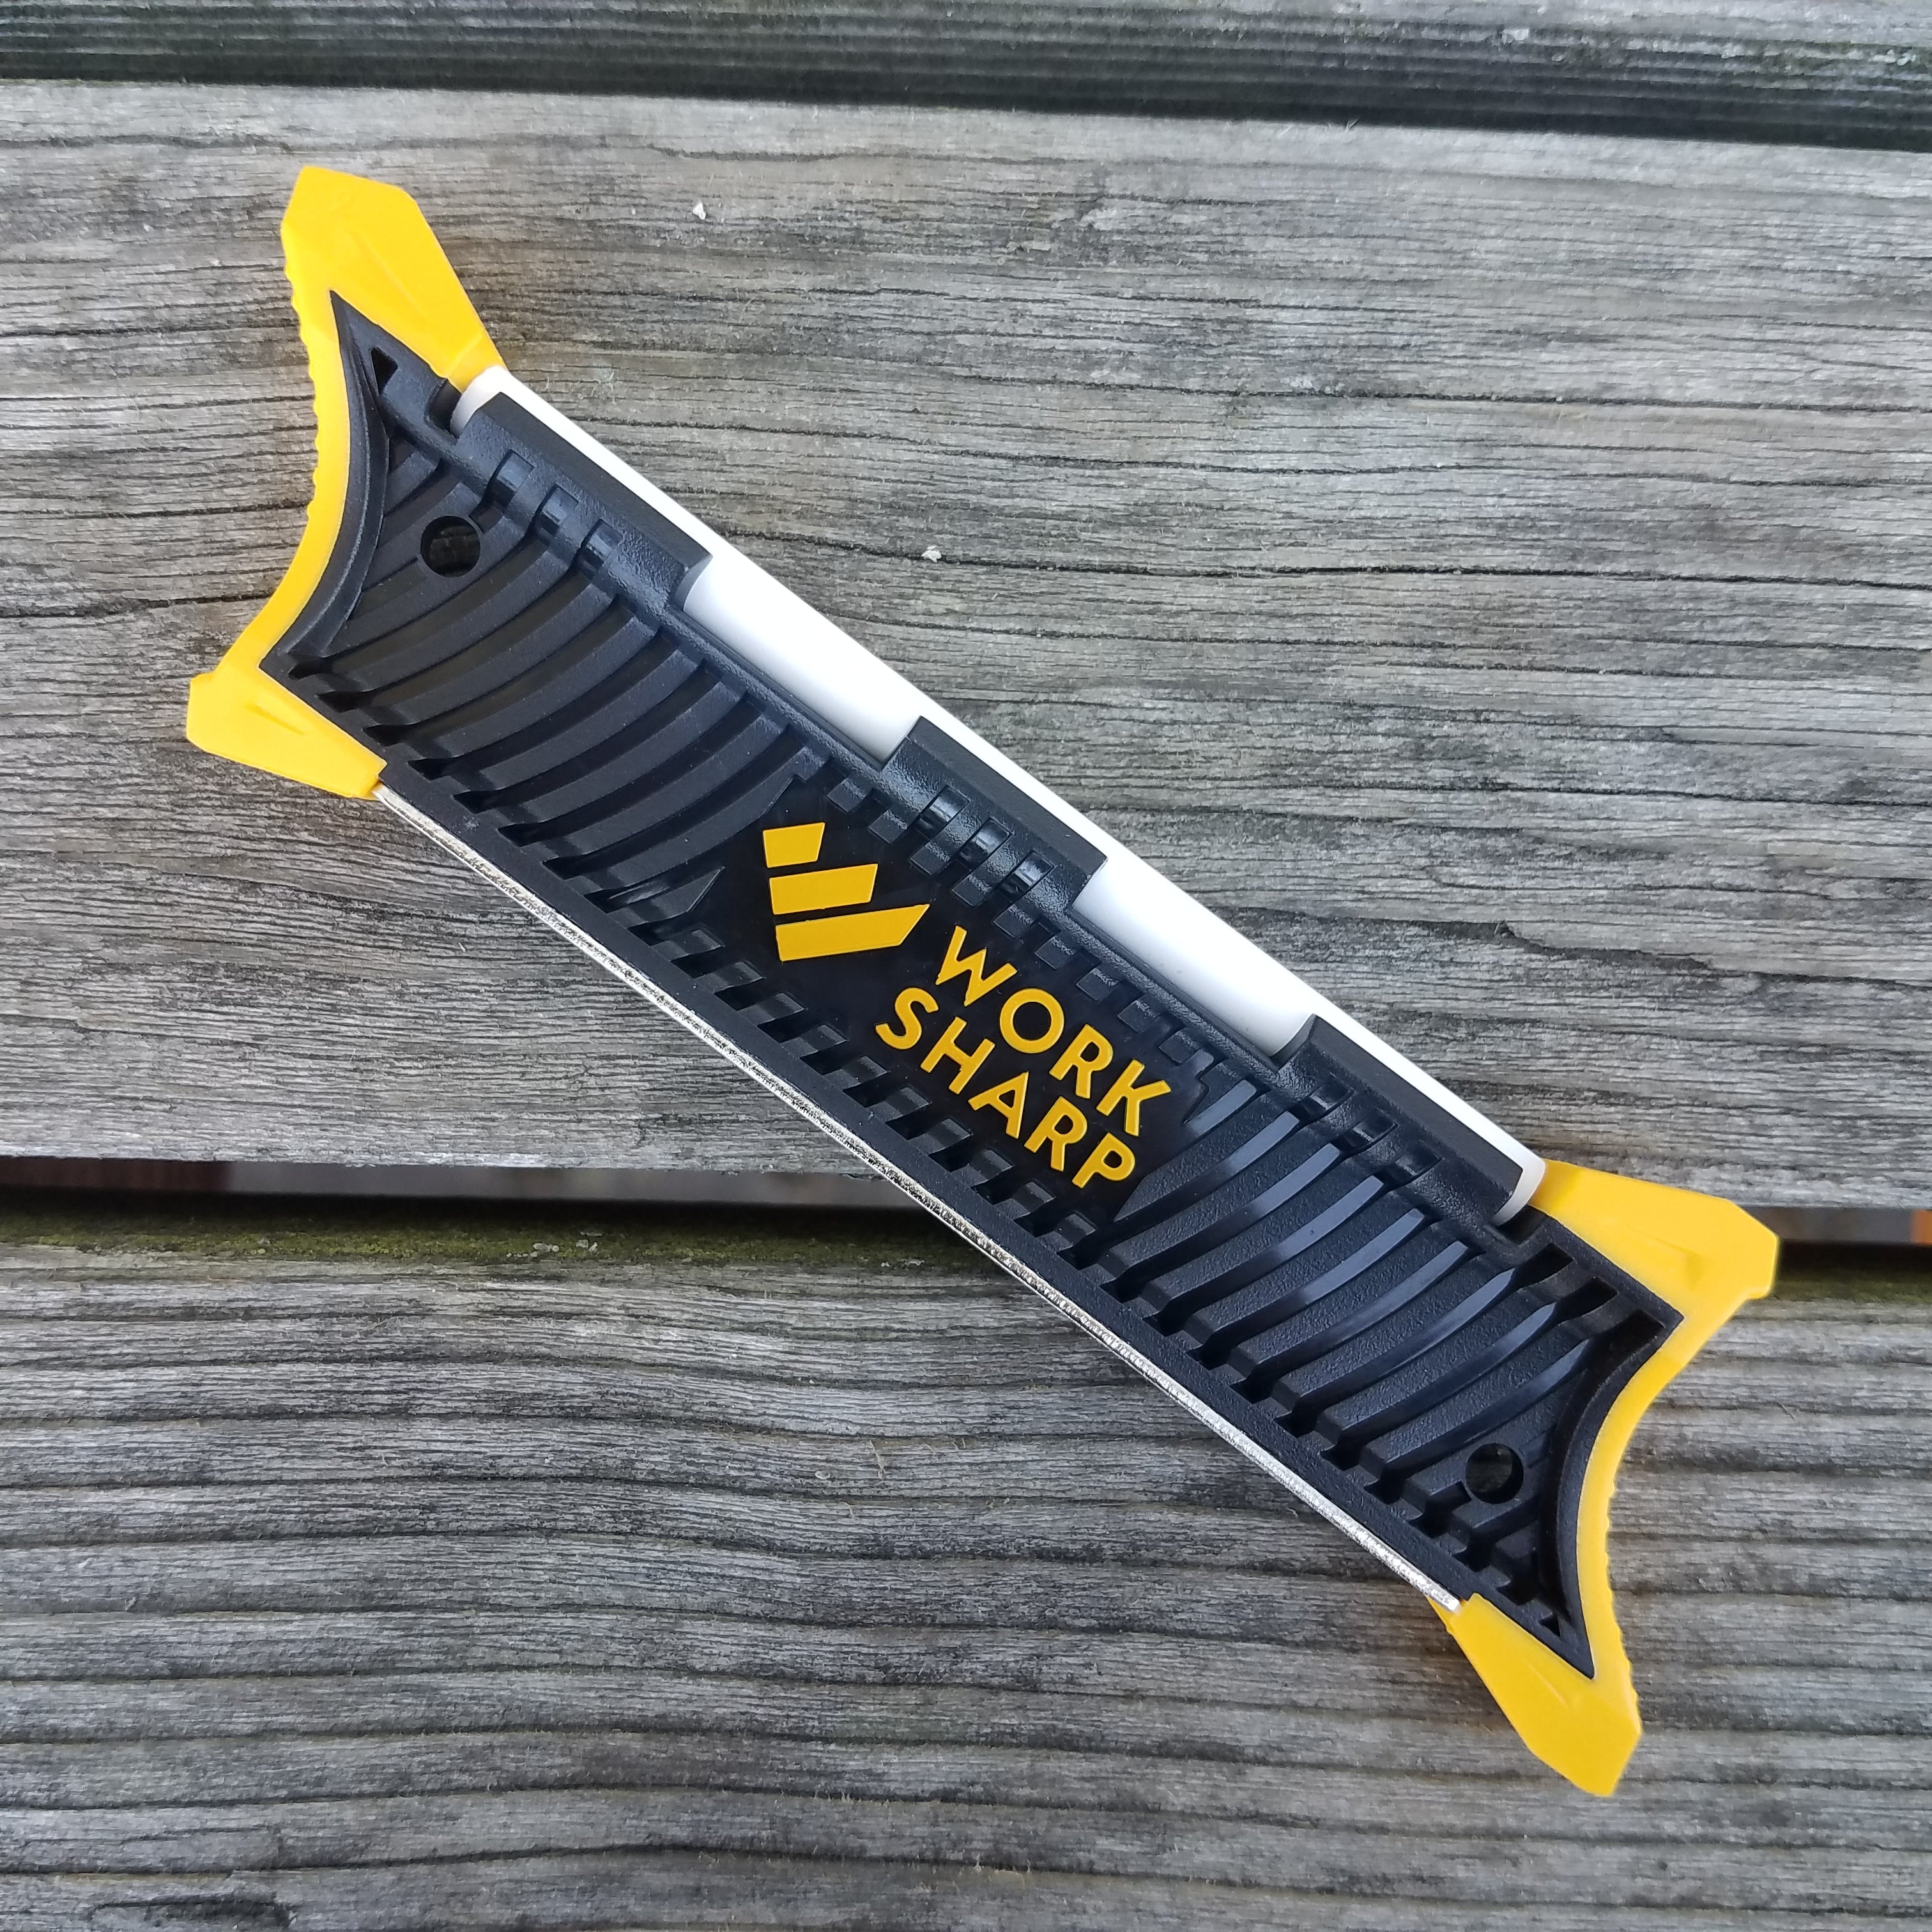 Pocket Knife Sharpener 🏆 Top 5 Best Pocket Knife Sharpener Review 